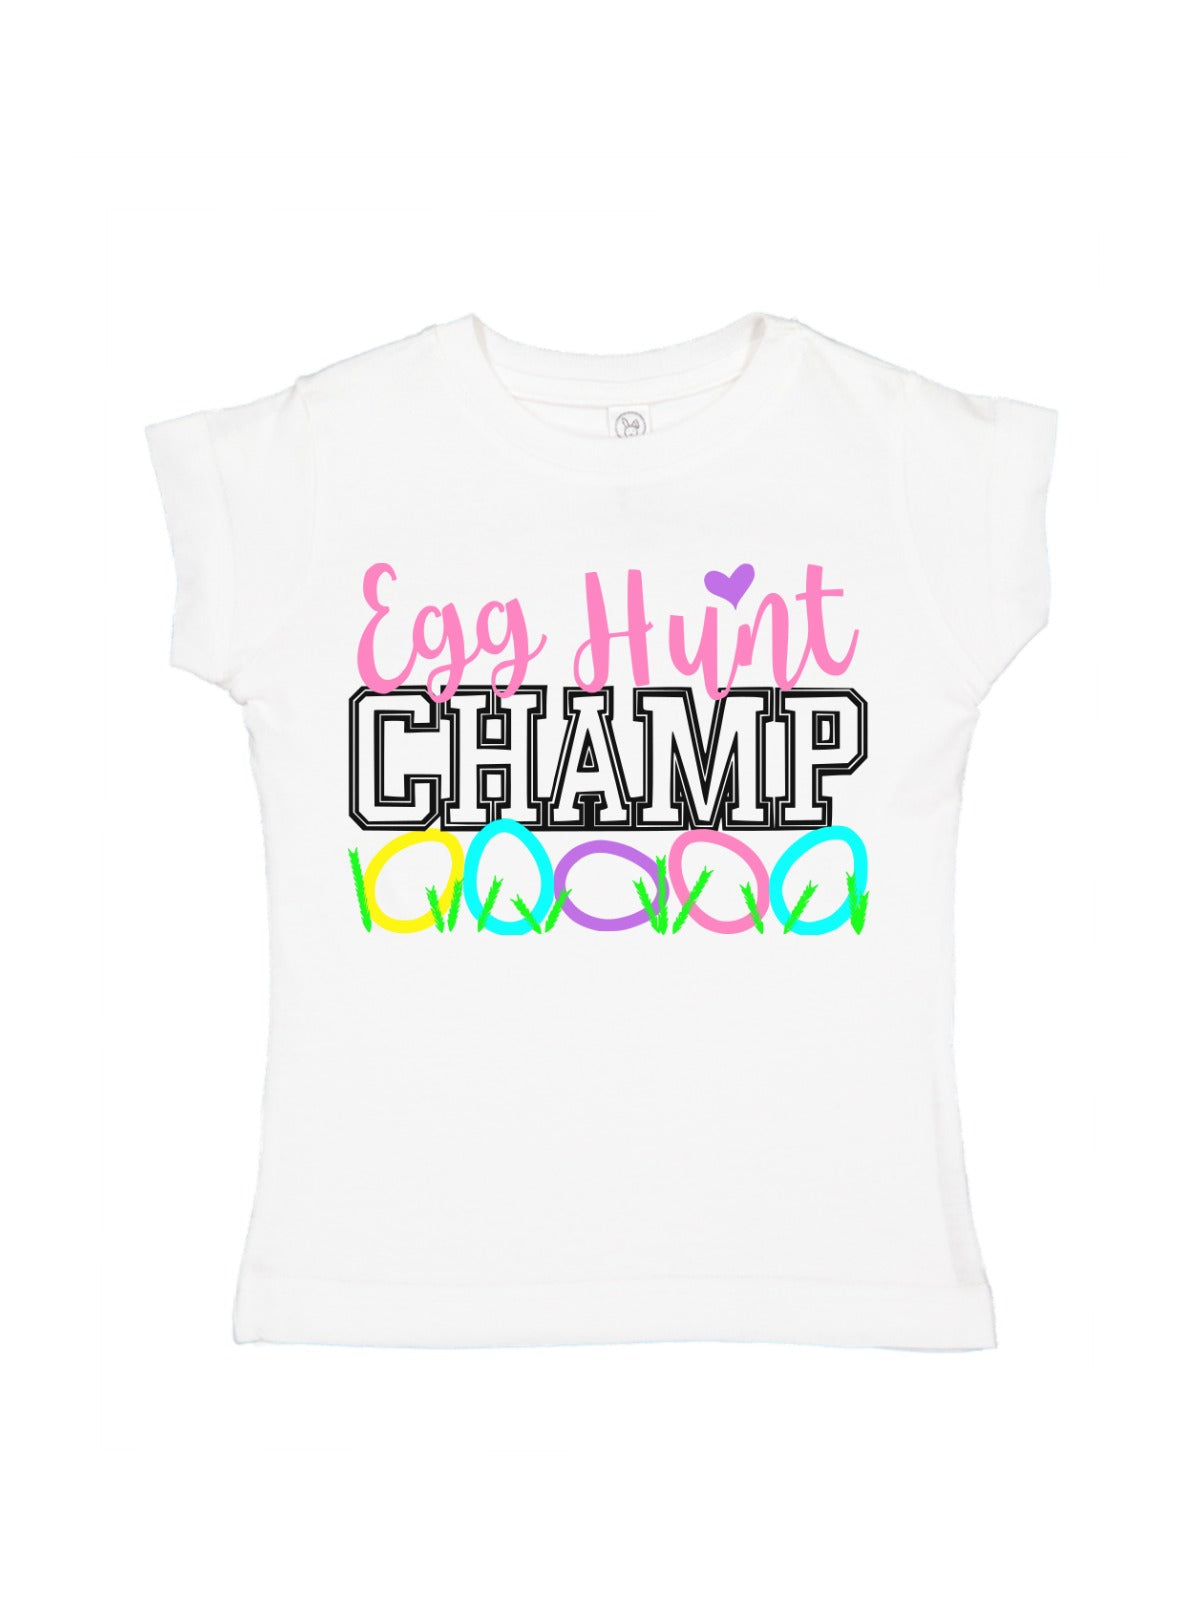 egg hunt champ girls Easter t-shirt